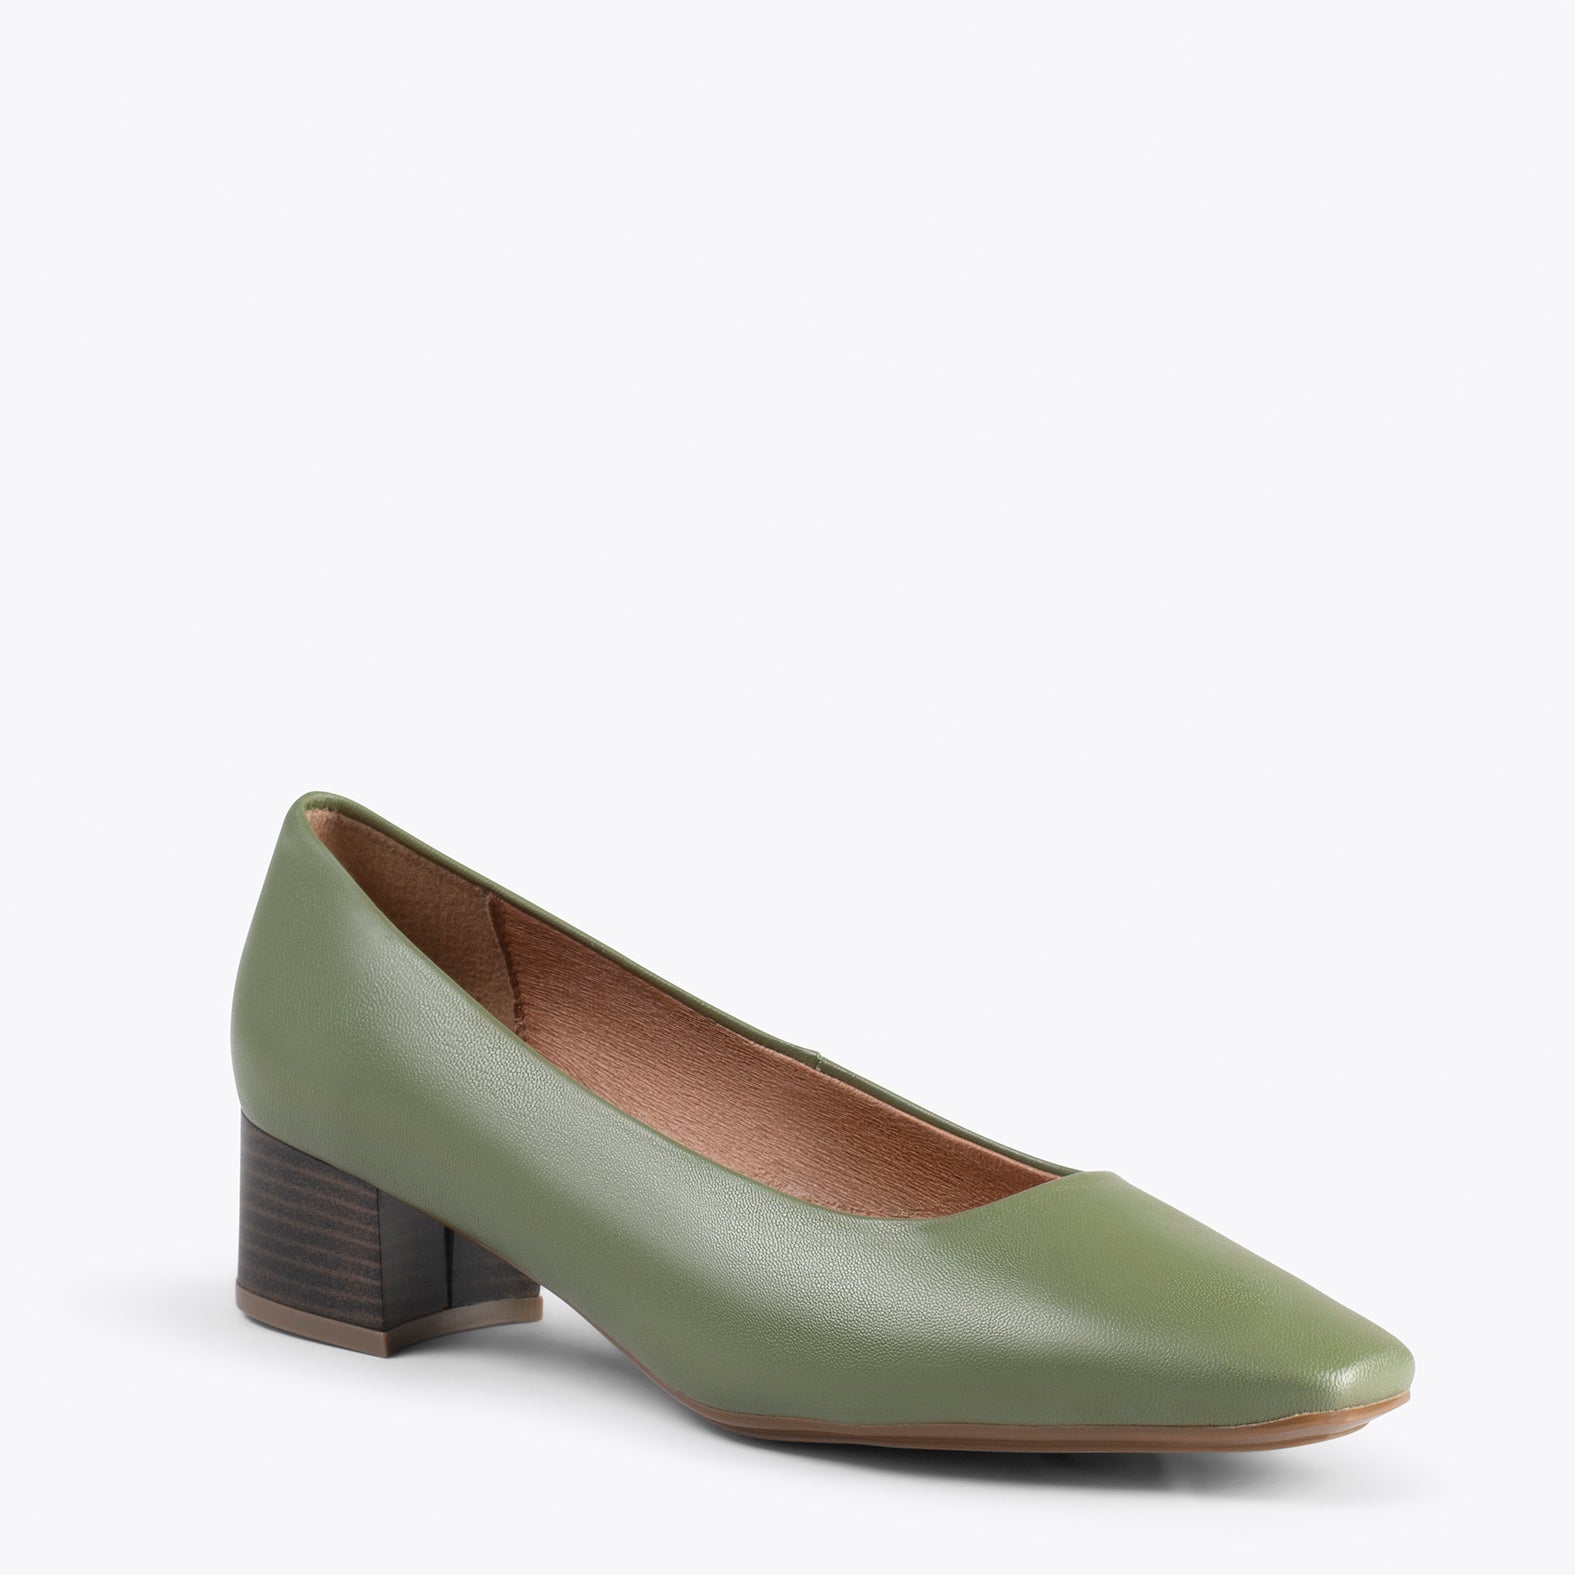 URBAN LADY – Chaussures à talon bas en cuir nappa KAKI